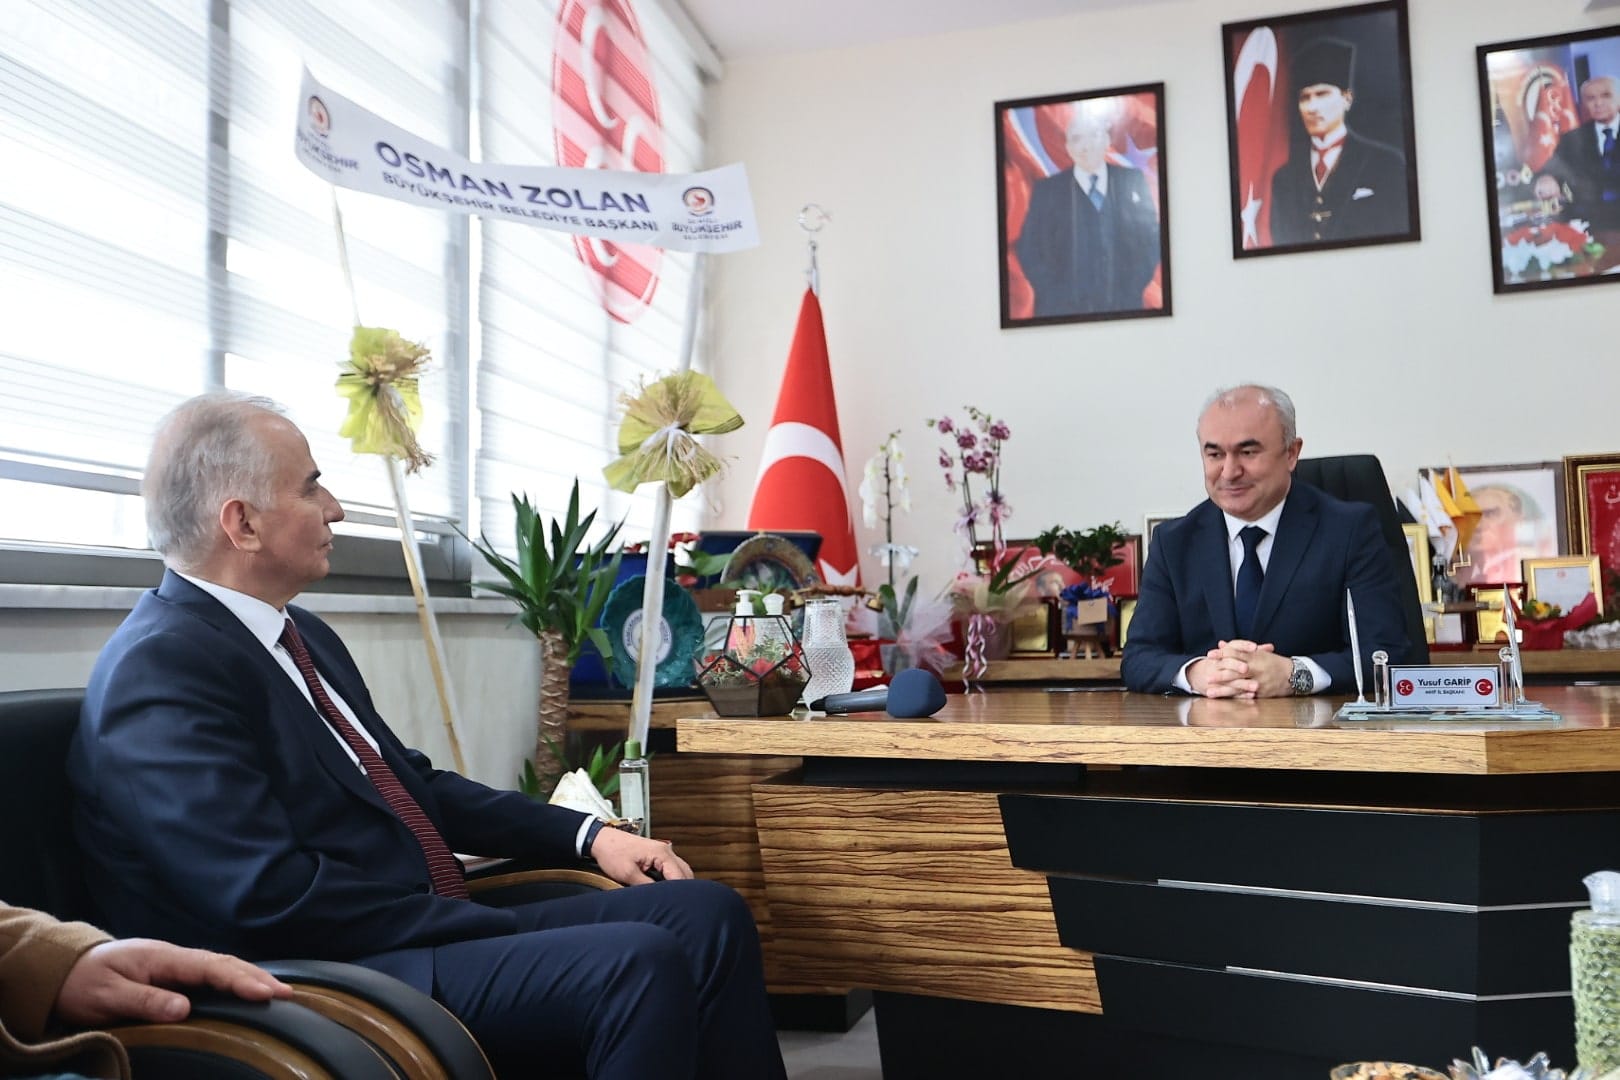 Baskan Zolandan MHP Il Baskani Garipe ziyaret 1 - Başkan Zolan'dan MHP İl Başkanı Garip’e Ziyaret